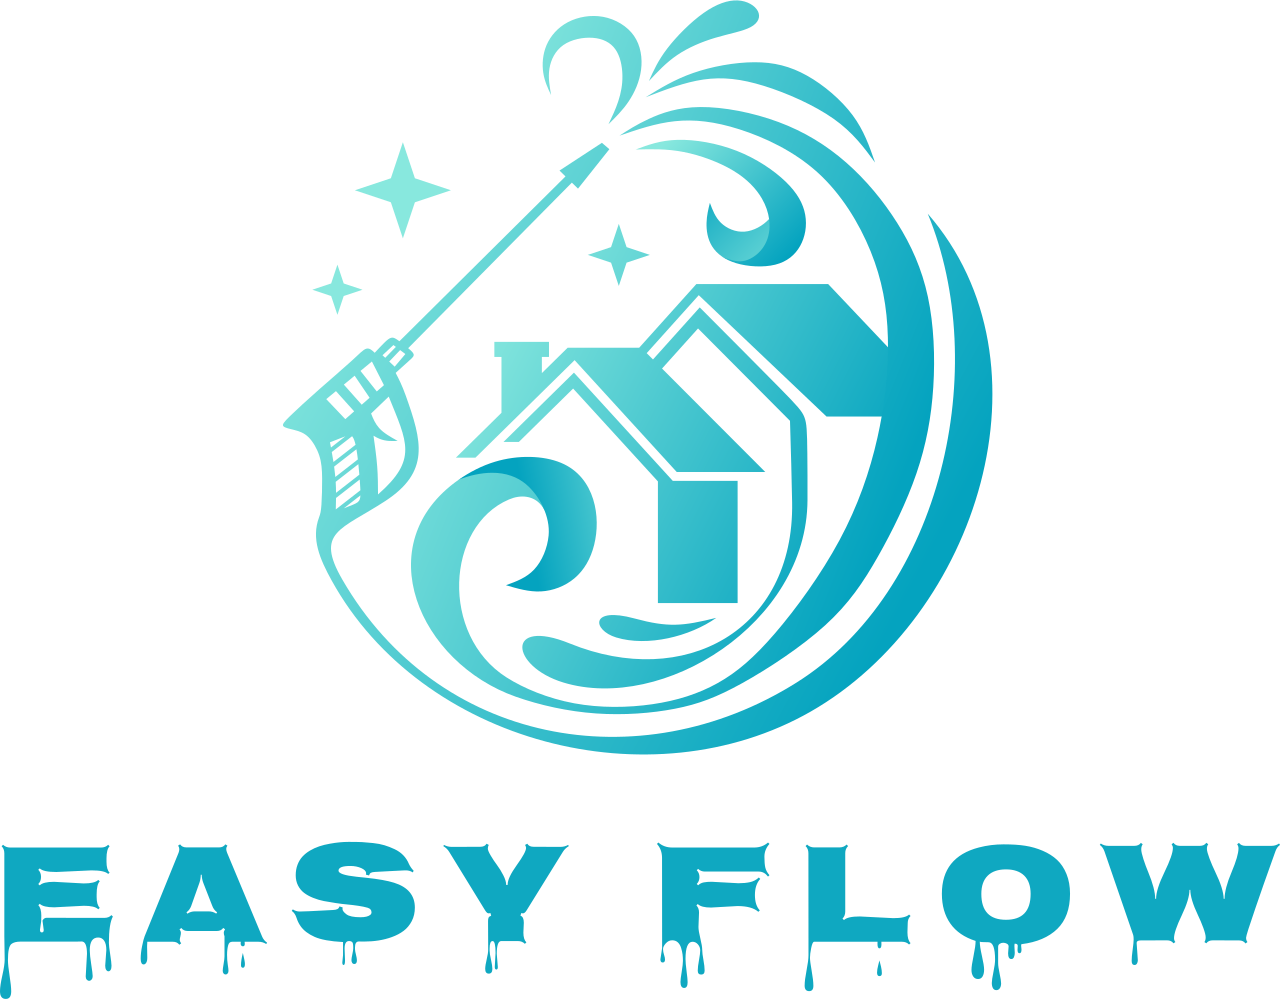 Easy Flow's logo